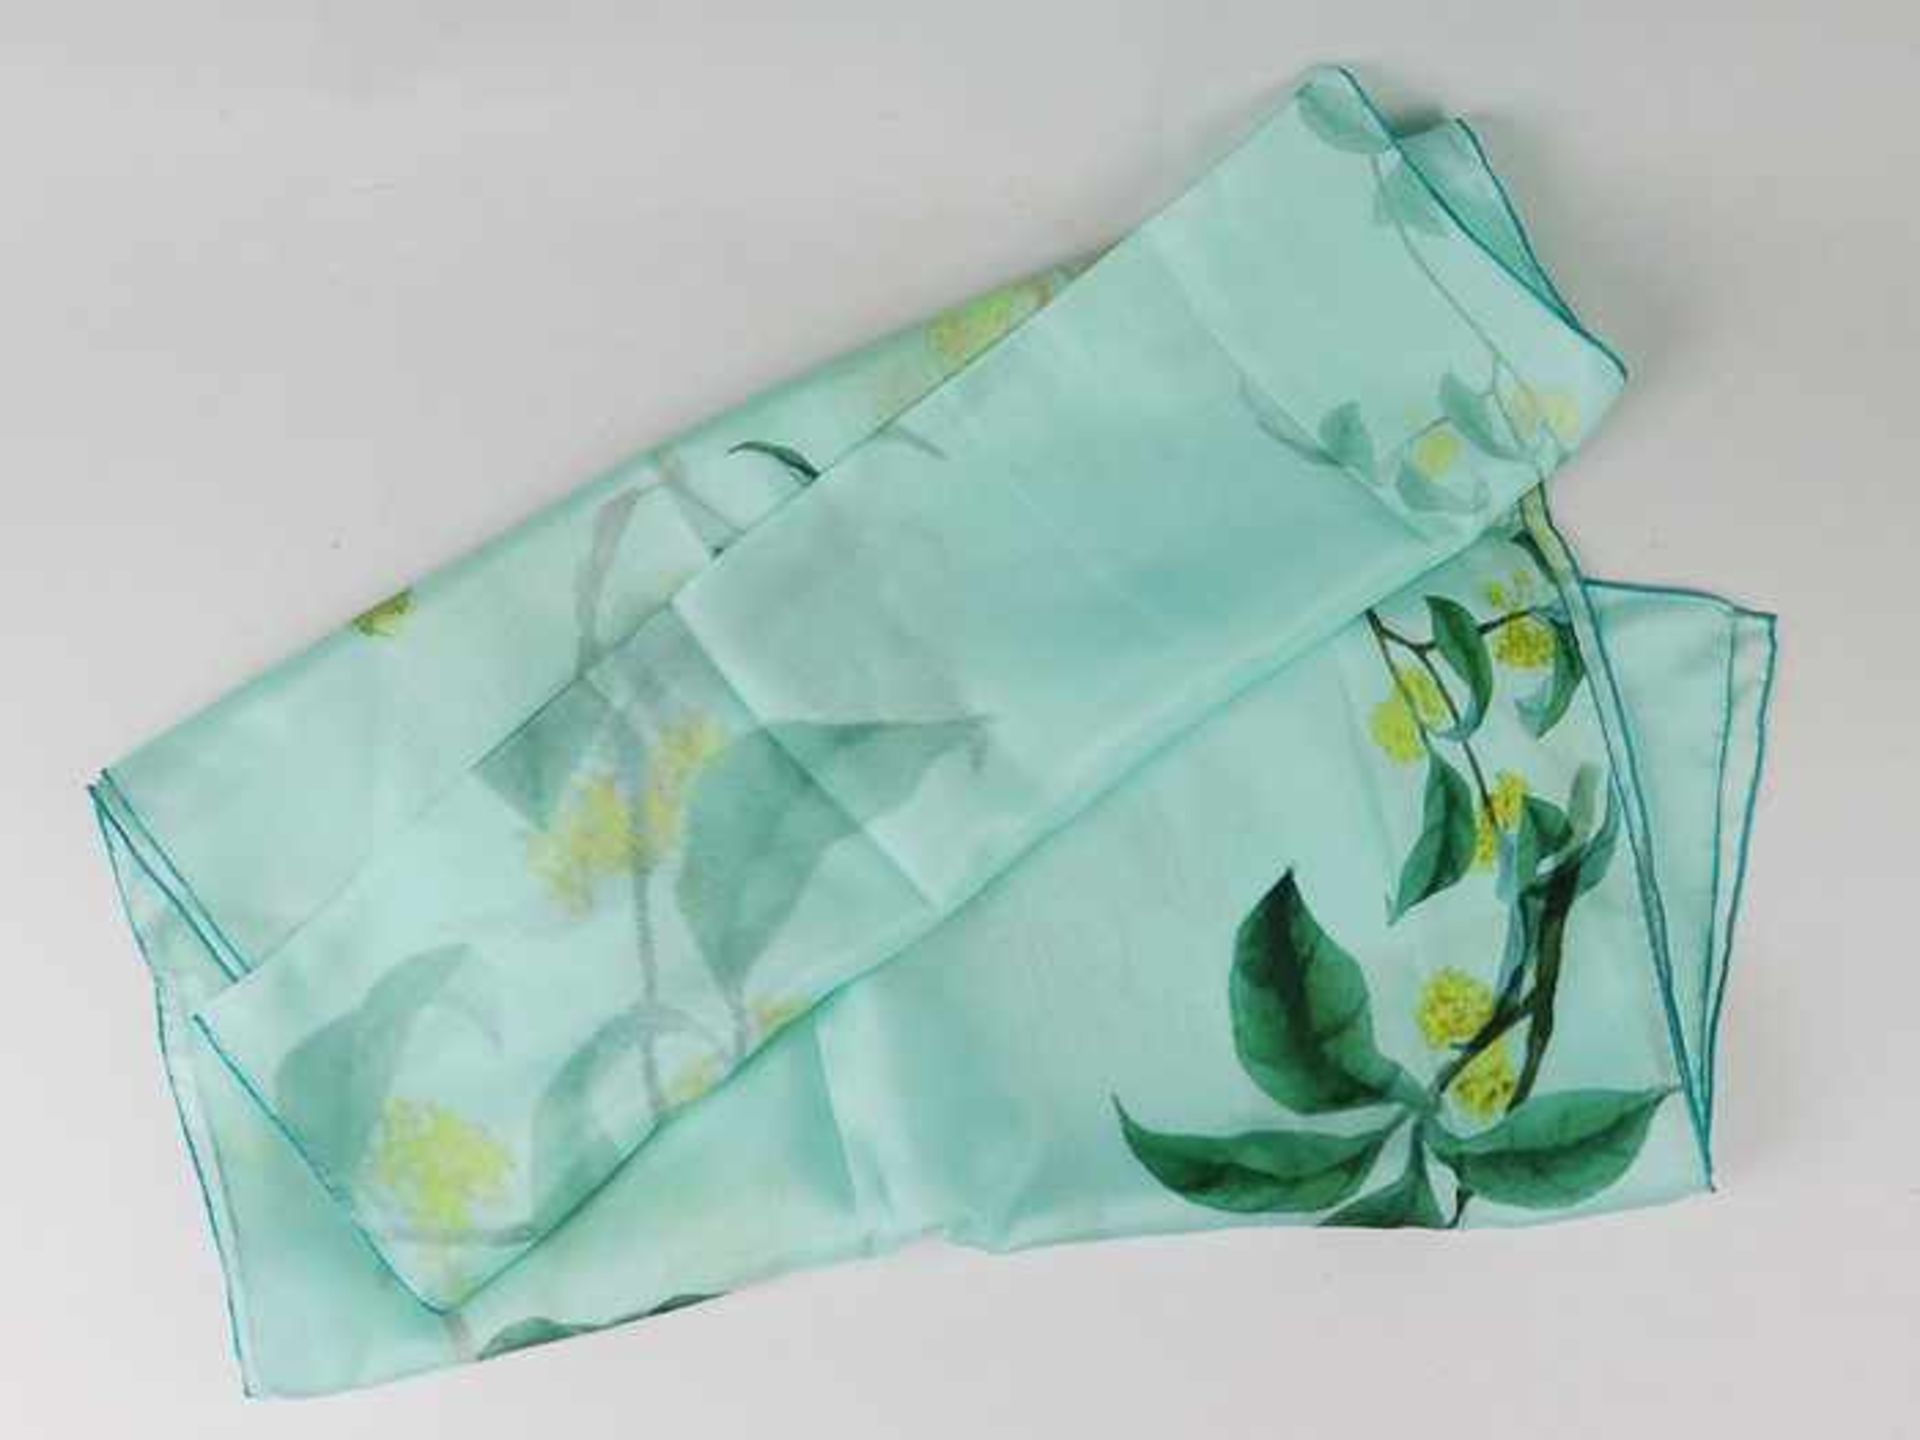 Susan Carlington - SeidenschalChina, Seide, türkis mit grün, gelben Blütenzweigen, OK, neu, ca. - Bild 2 aus 4